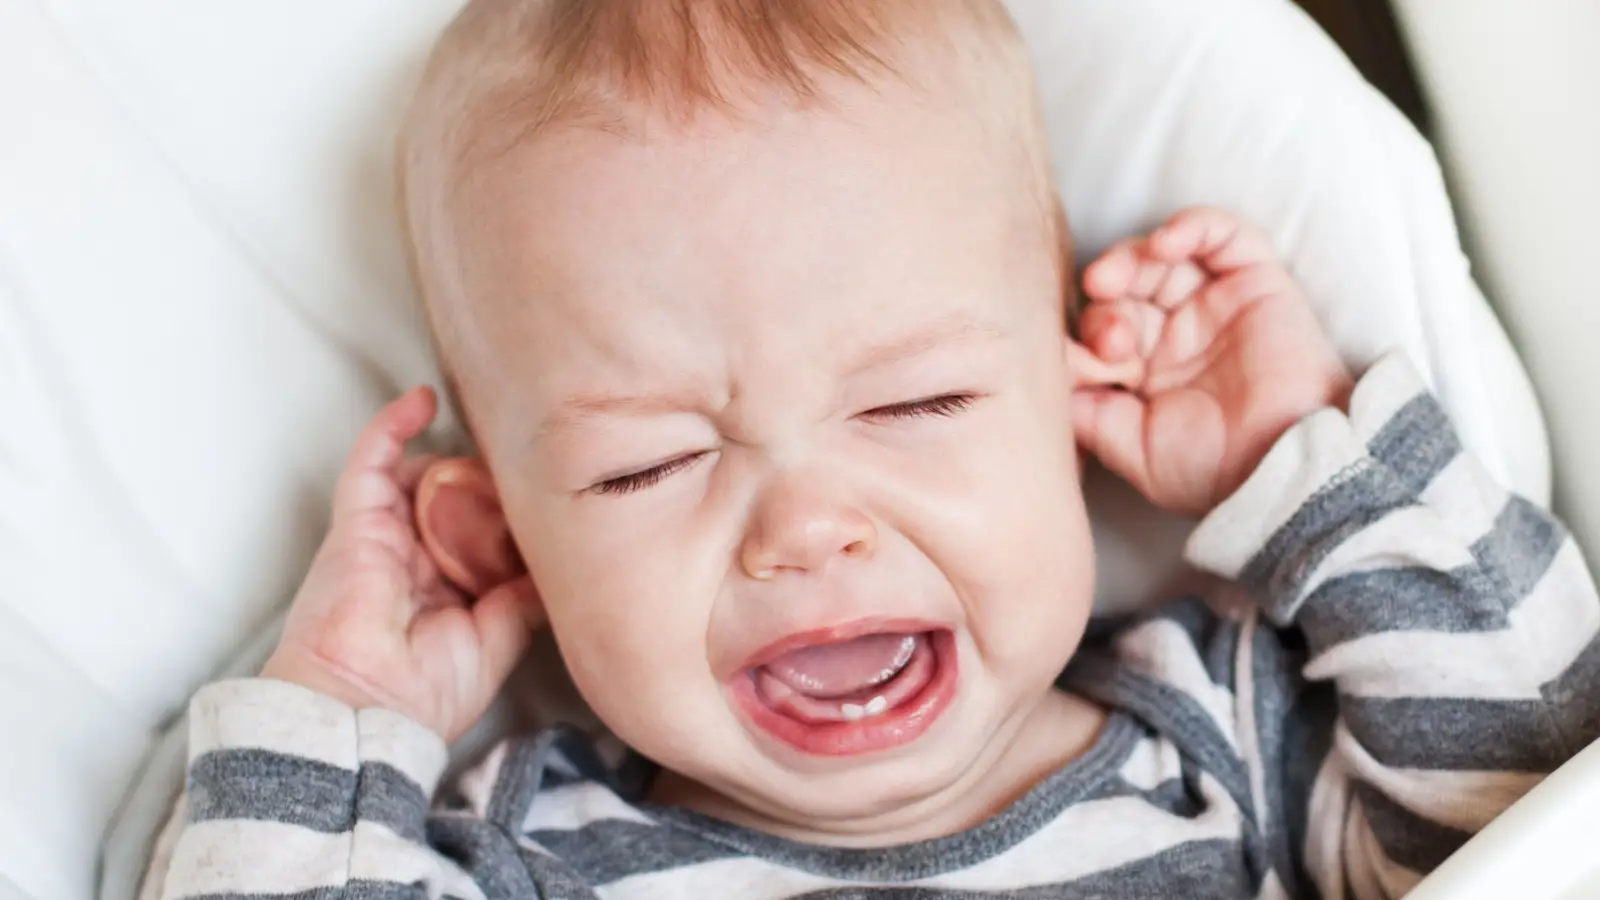 ما أعراض التهاب الأذن الوسطى عند الرضع؟ وما علاجه؟